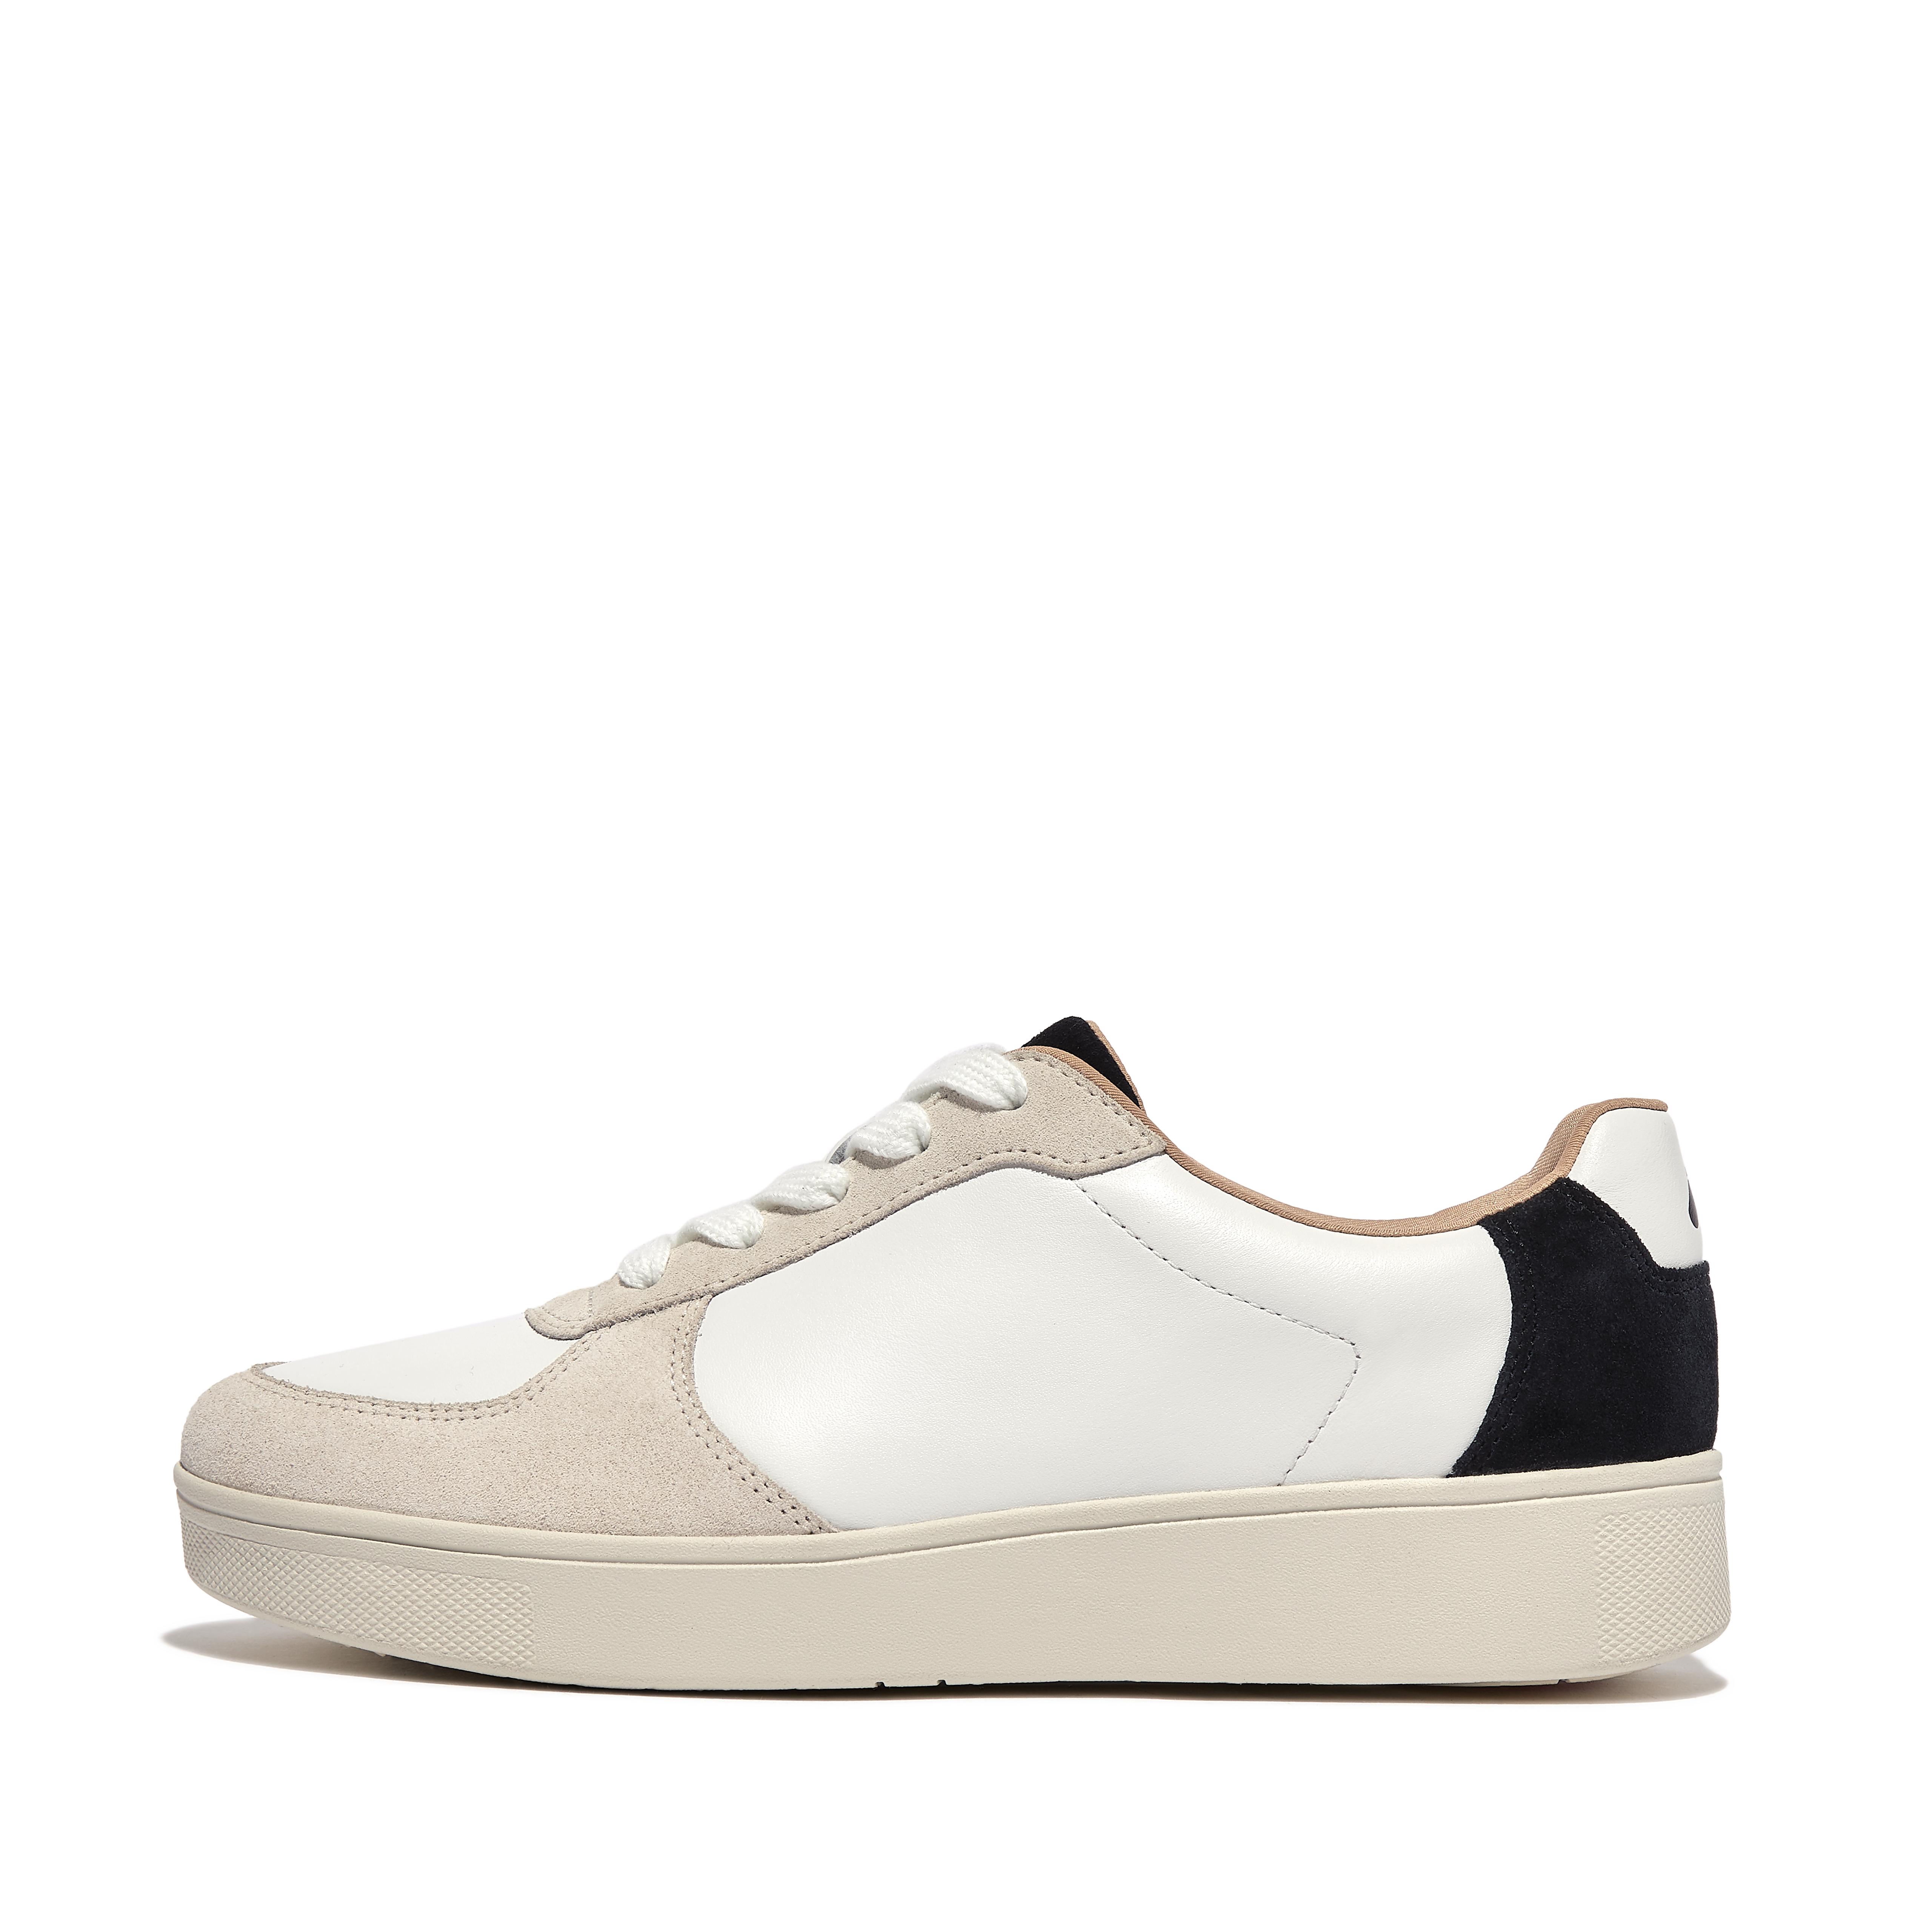 핏플랍 Fitflop Leather/Suede Panel Sneakers,White/black